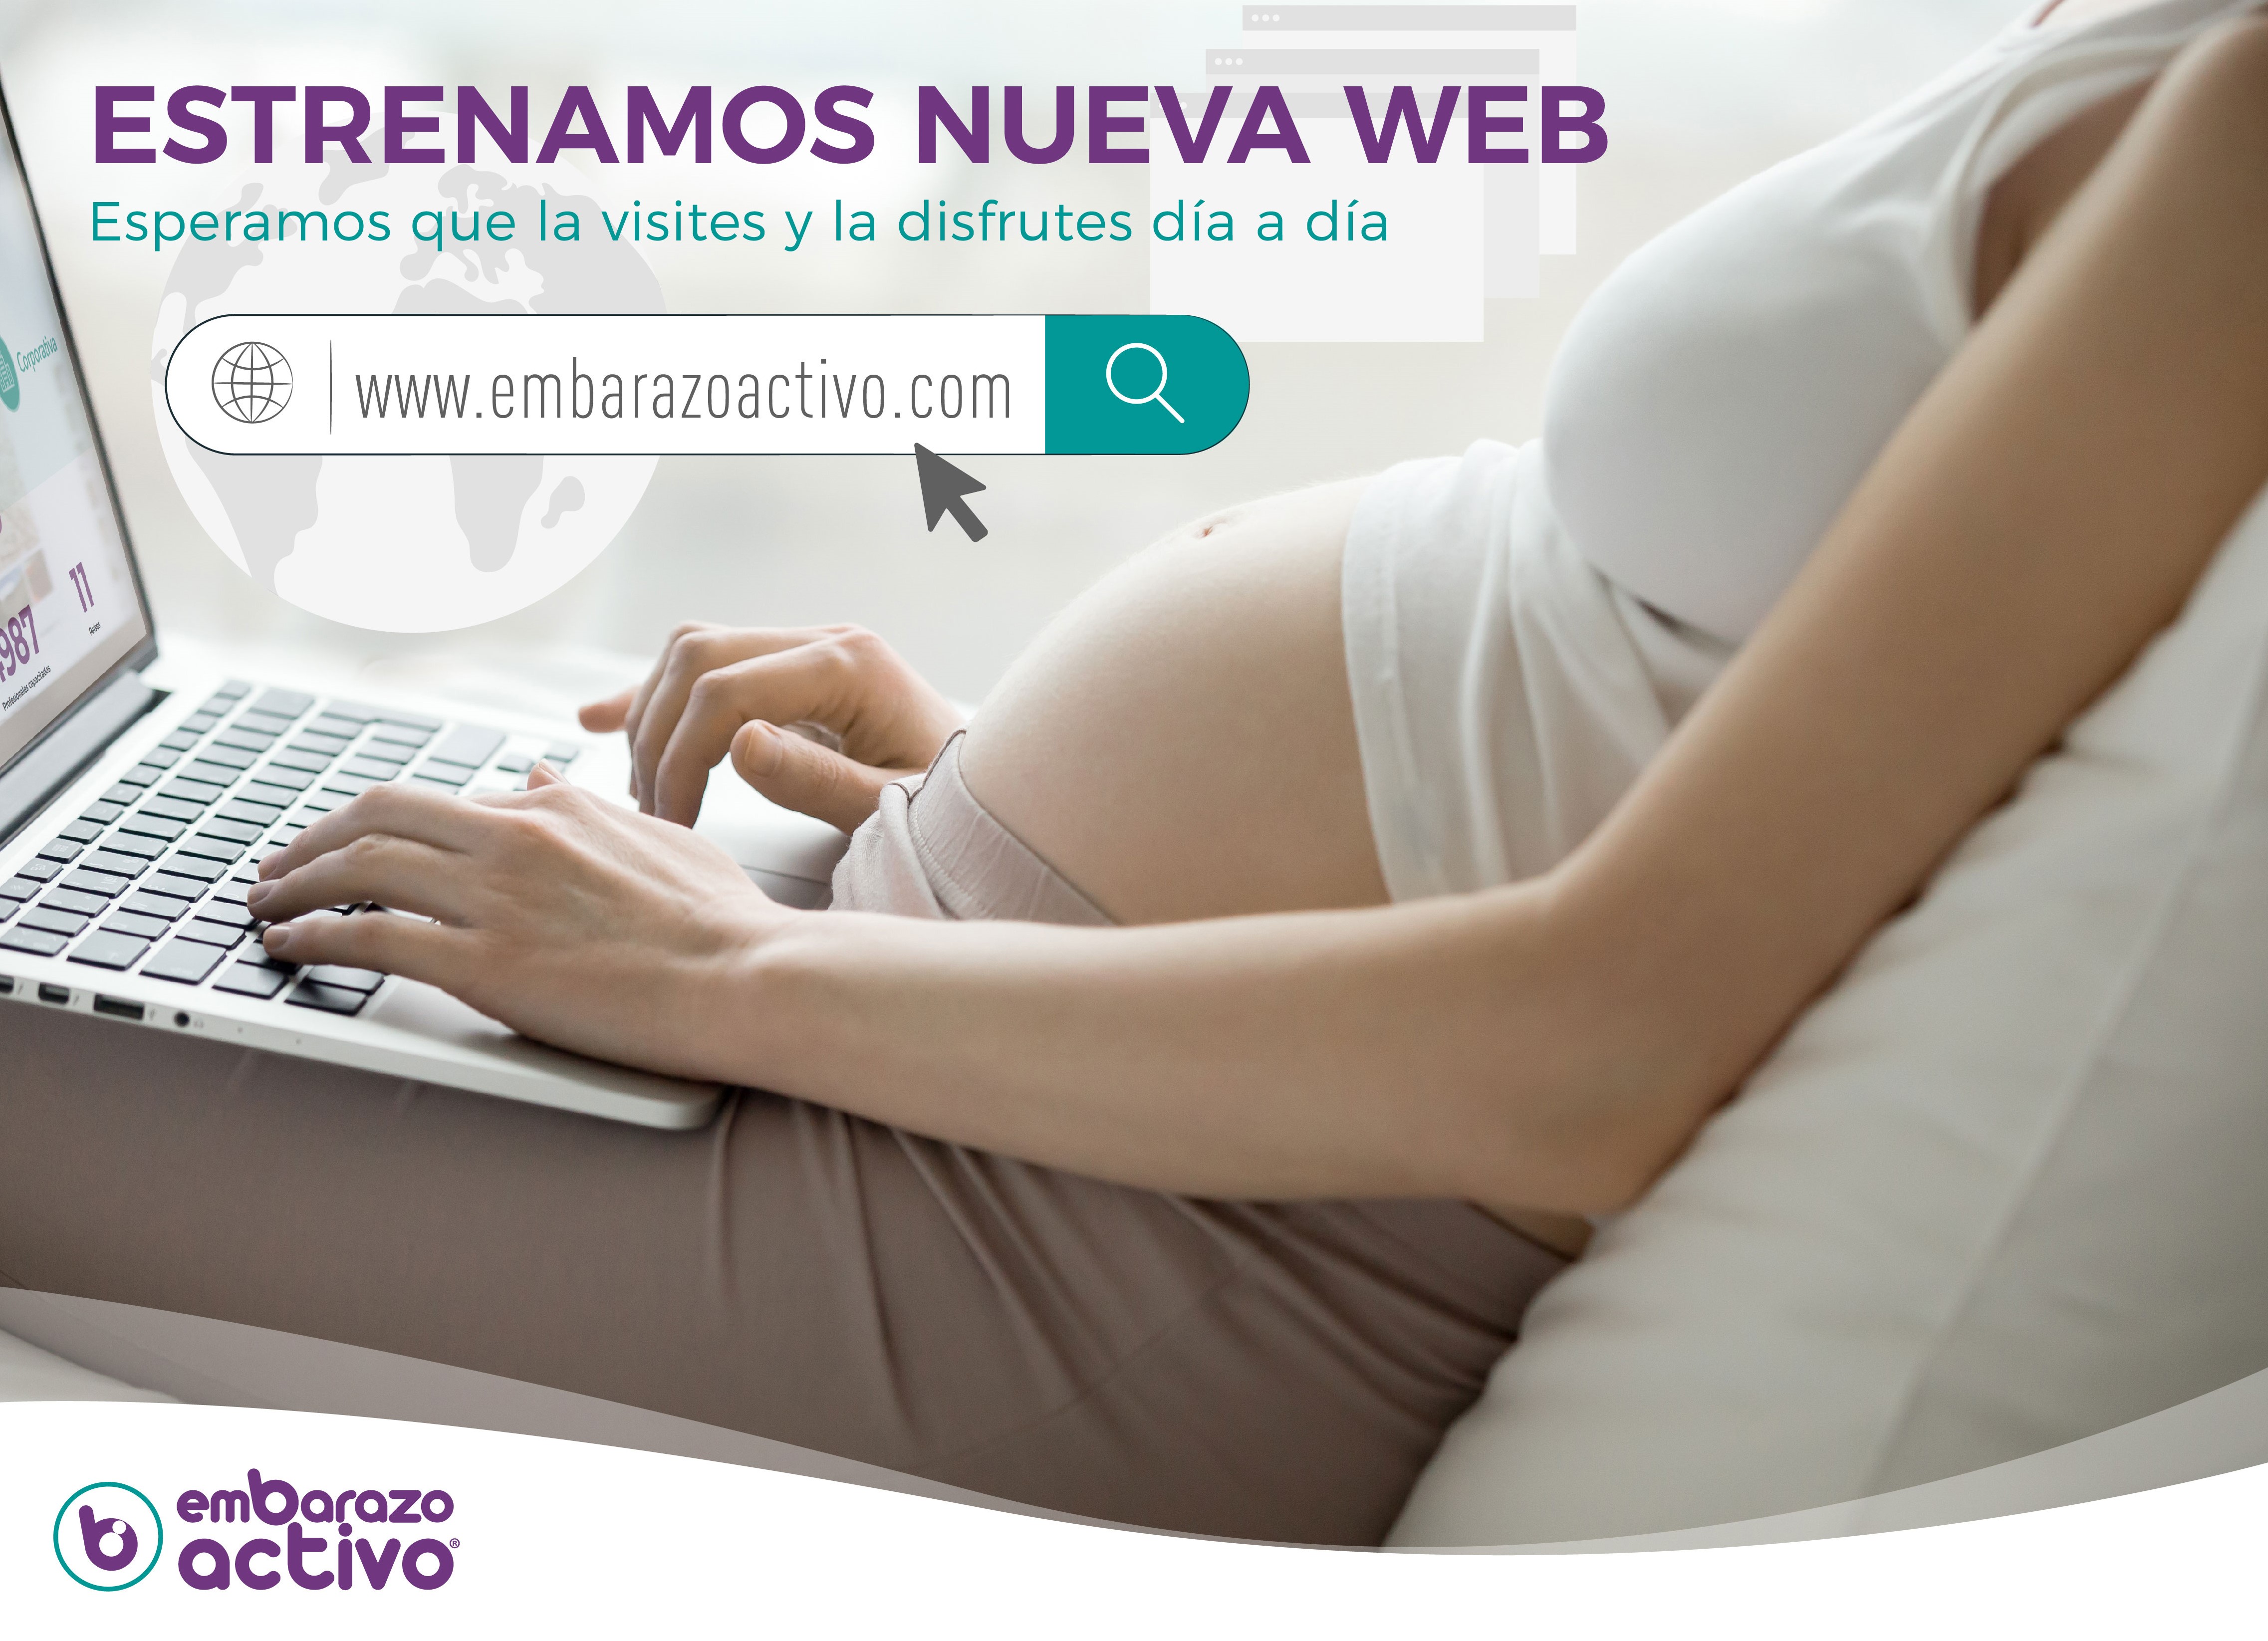 Embarazo Activo estrena su nueva web